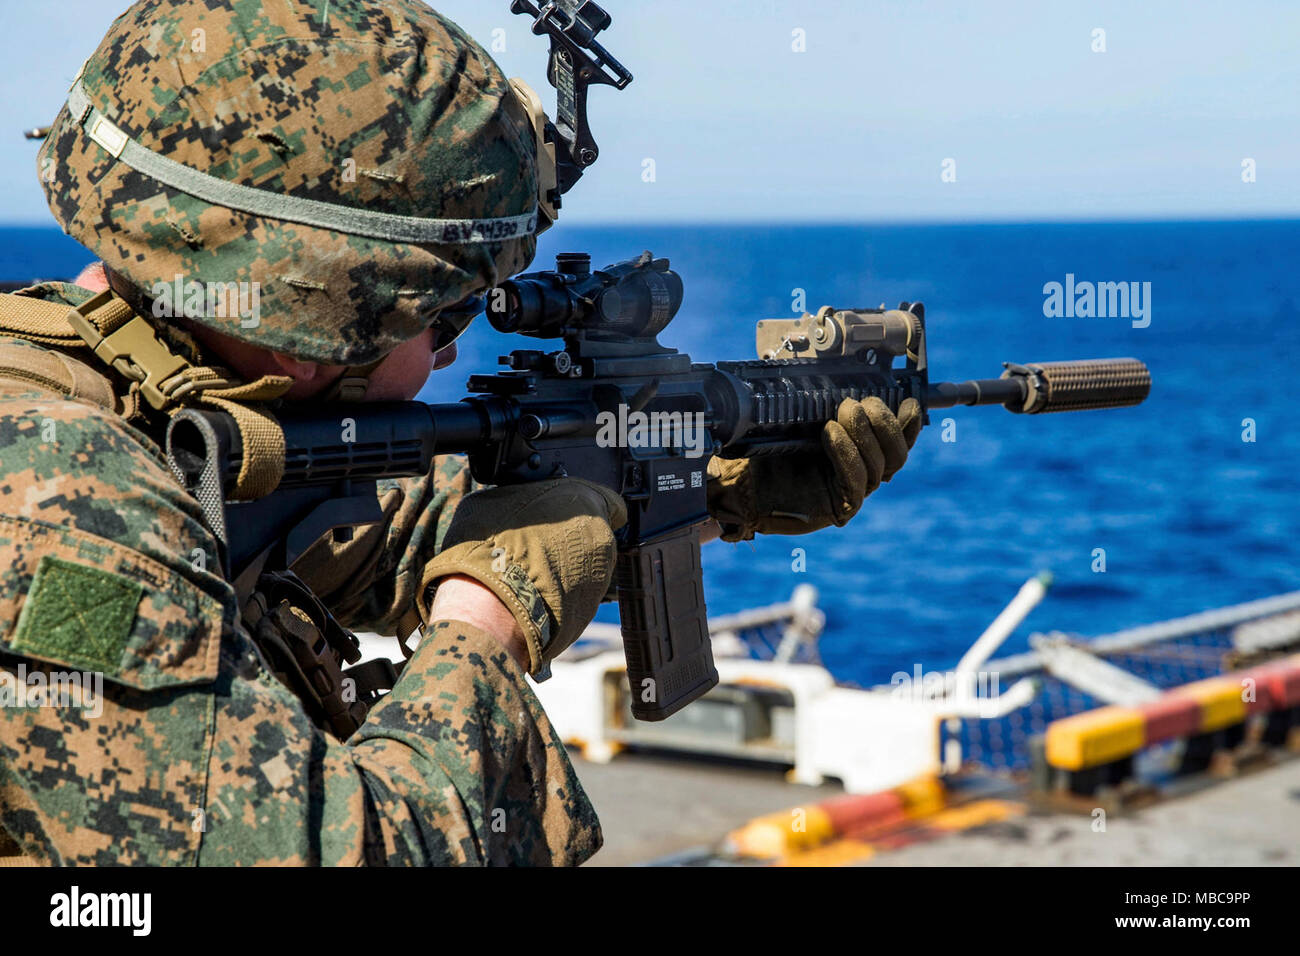 Ein US-Marine mit Bataillon Landung Team, 2.BATAILLON, 6 Marine Regiment (BLT 2/6), 26 Marine Expeditionary Unit (MEU), Brände eine M4A1 Gewehr auf ein Ziel während kurzer Reichweite schussübungen an Bord der USS Iwo Jima (LHD 7), Feb 16, 2018. Die 26. MEU ist die Teilnahme an einem Einsatz auf See see- und friedenserhaltenden Maßnahmen sowie Verhalten pflegen Beziehungen zu ausländischen Armeen durch gemeinsame Übungen. (U.S. Marine Corps Stockfoto